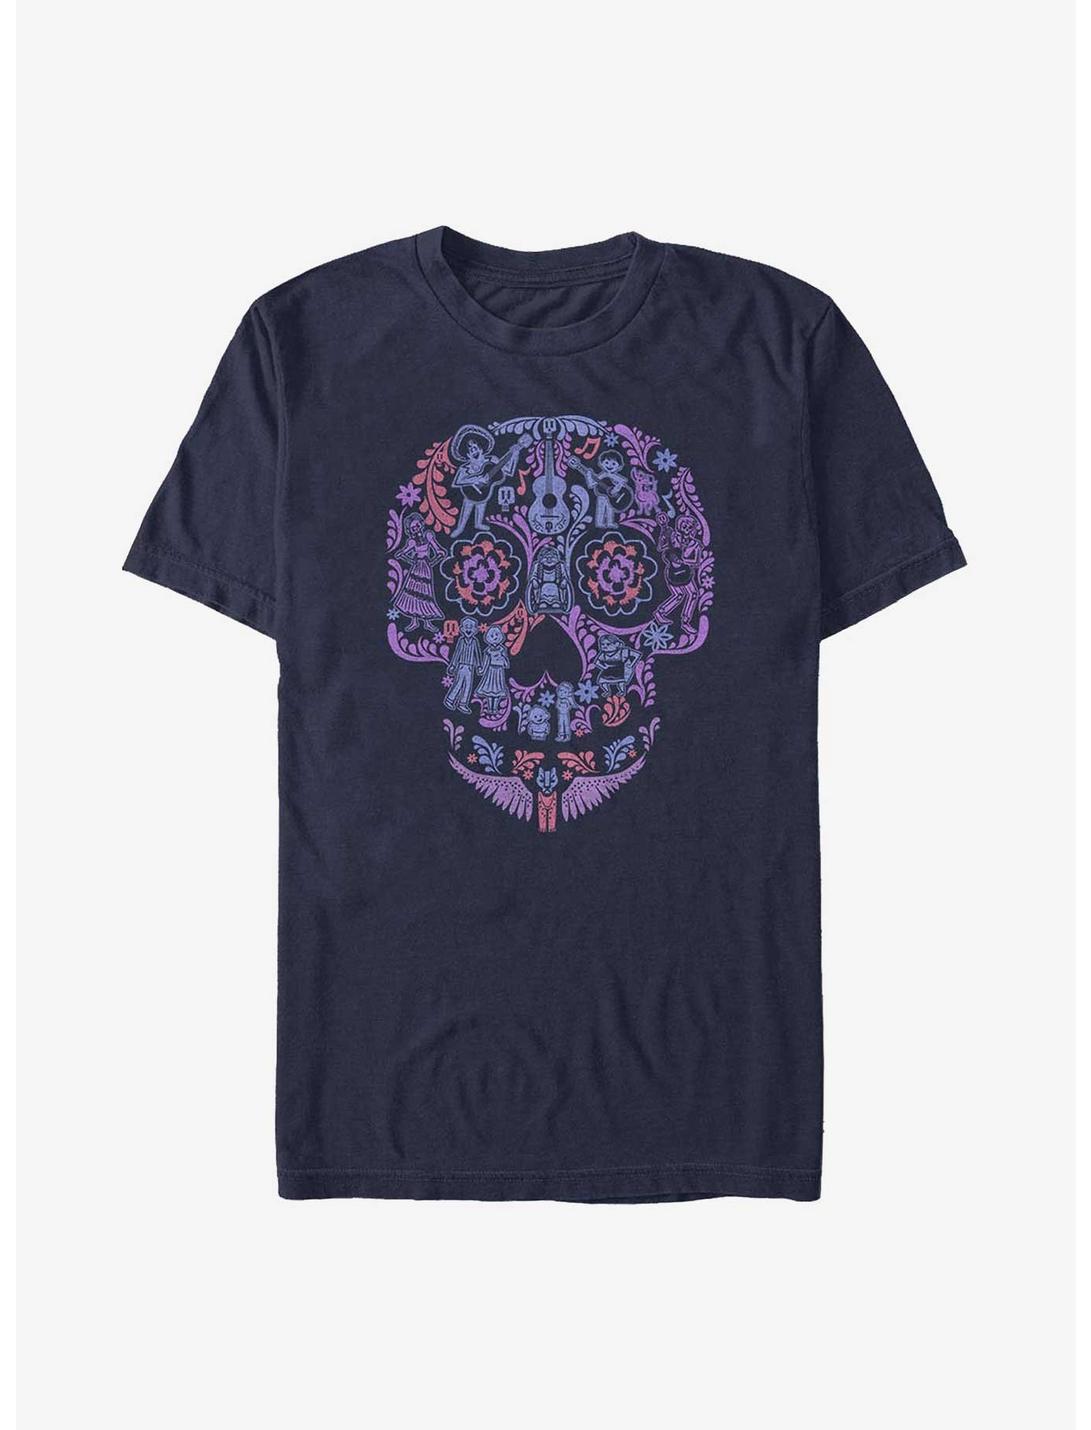 Disney Pixar Coco Skull T-Shirt, NAVY, hi-res